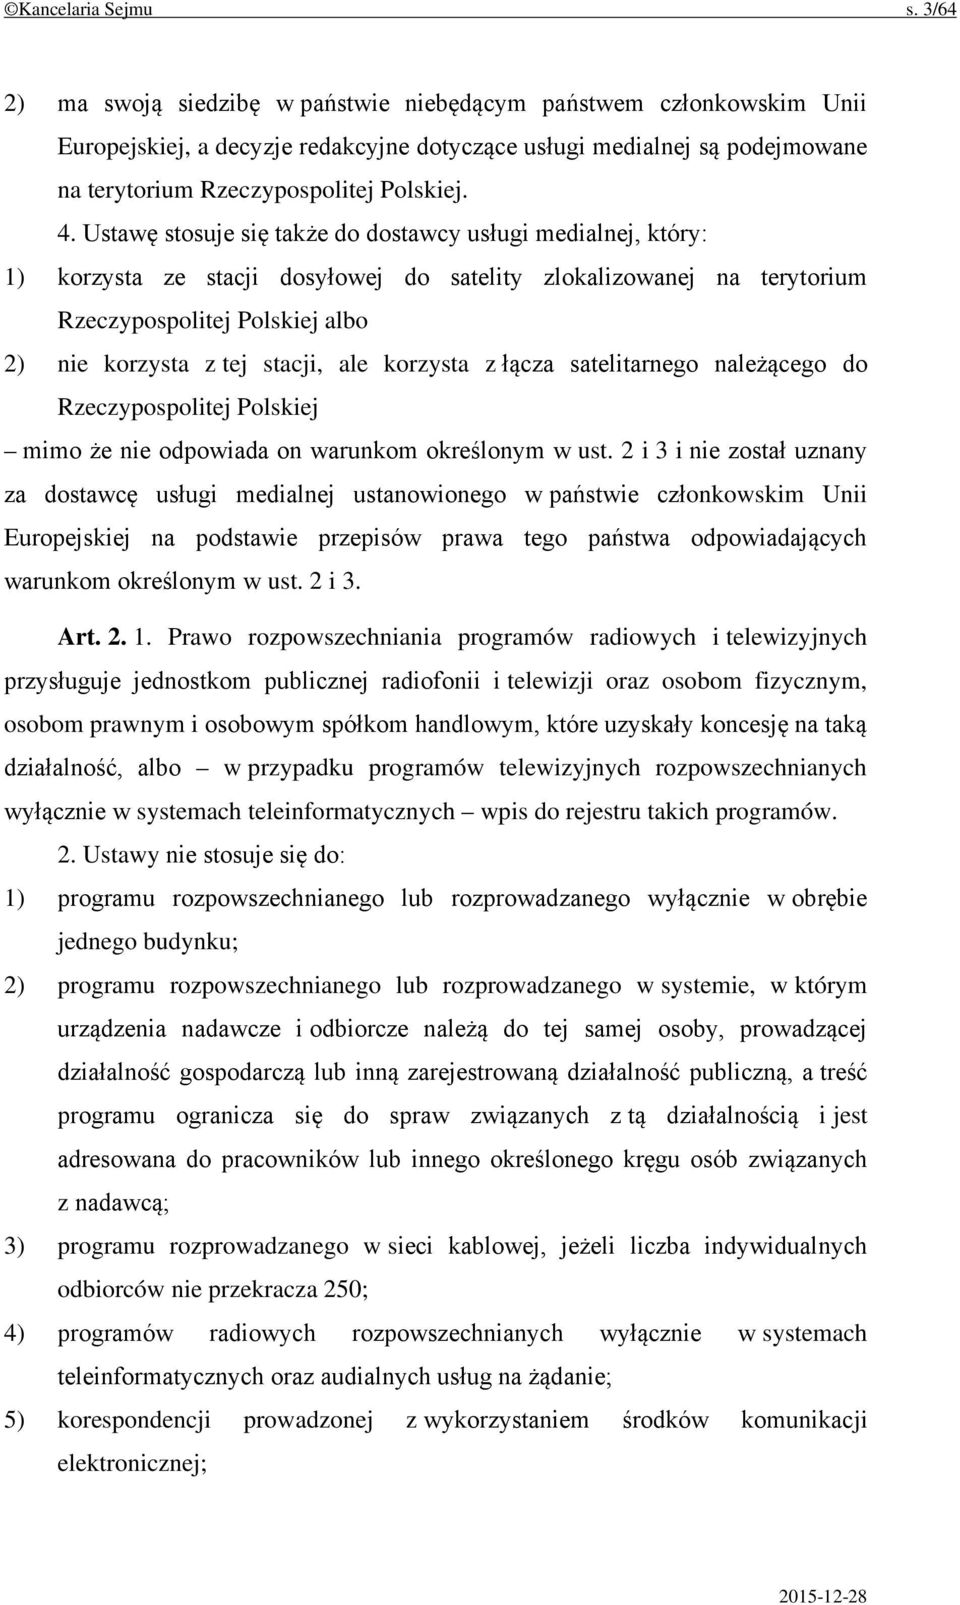 Ustawę stosuje się także do dostawcy usługi medialnej, który: 1) korzysta ze stacji dosyłowej do satelity zlokalizowanej na terytorium Rzeczypospolitej Polskiej albo 2) nie korzysta z tej stacji, ale